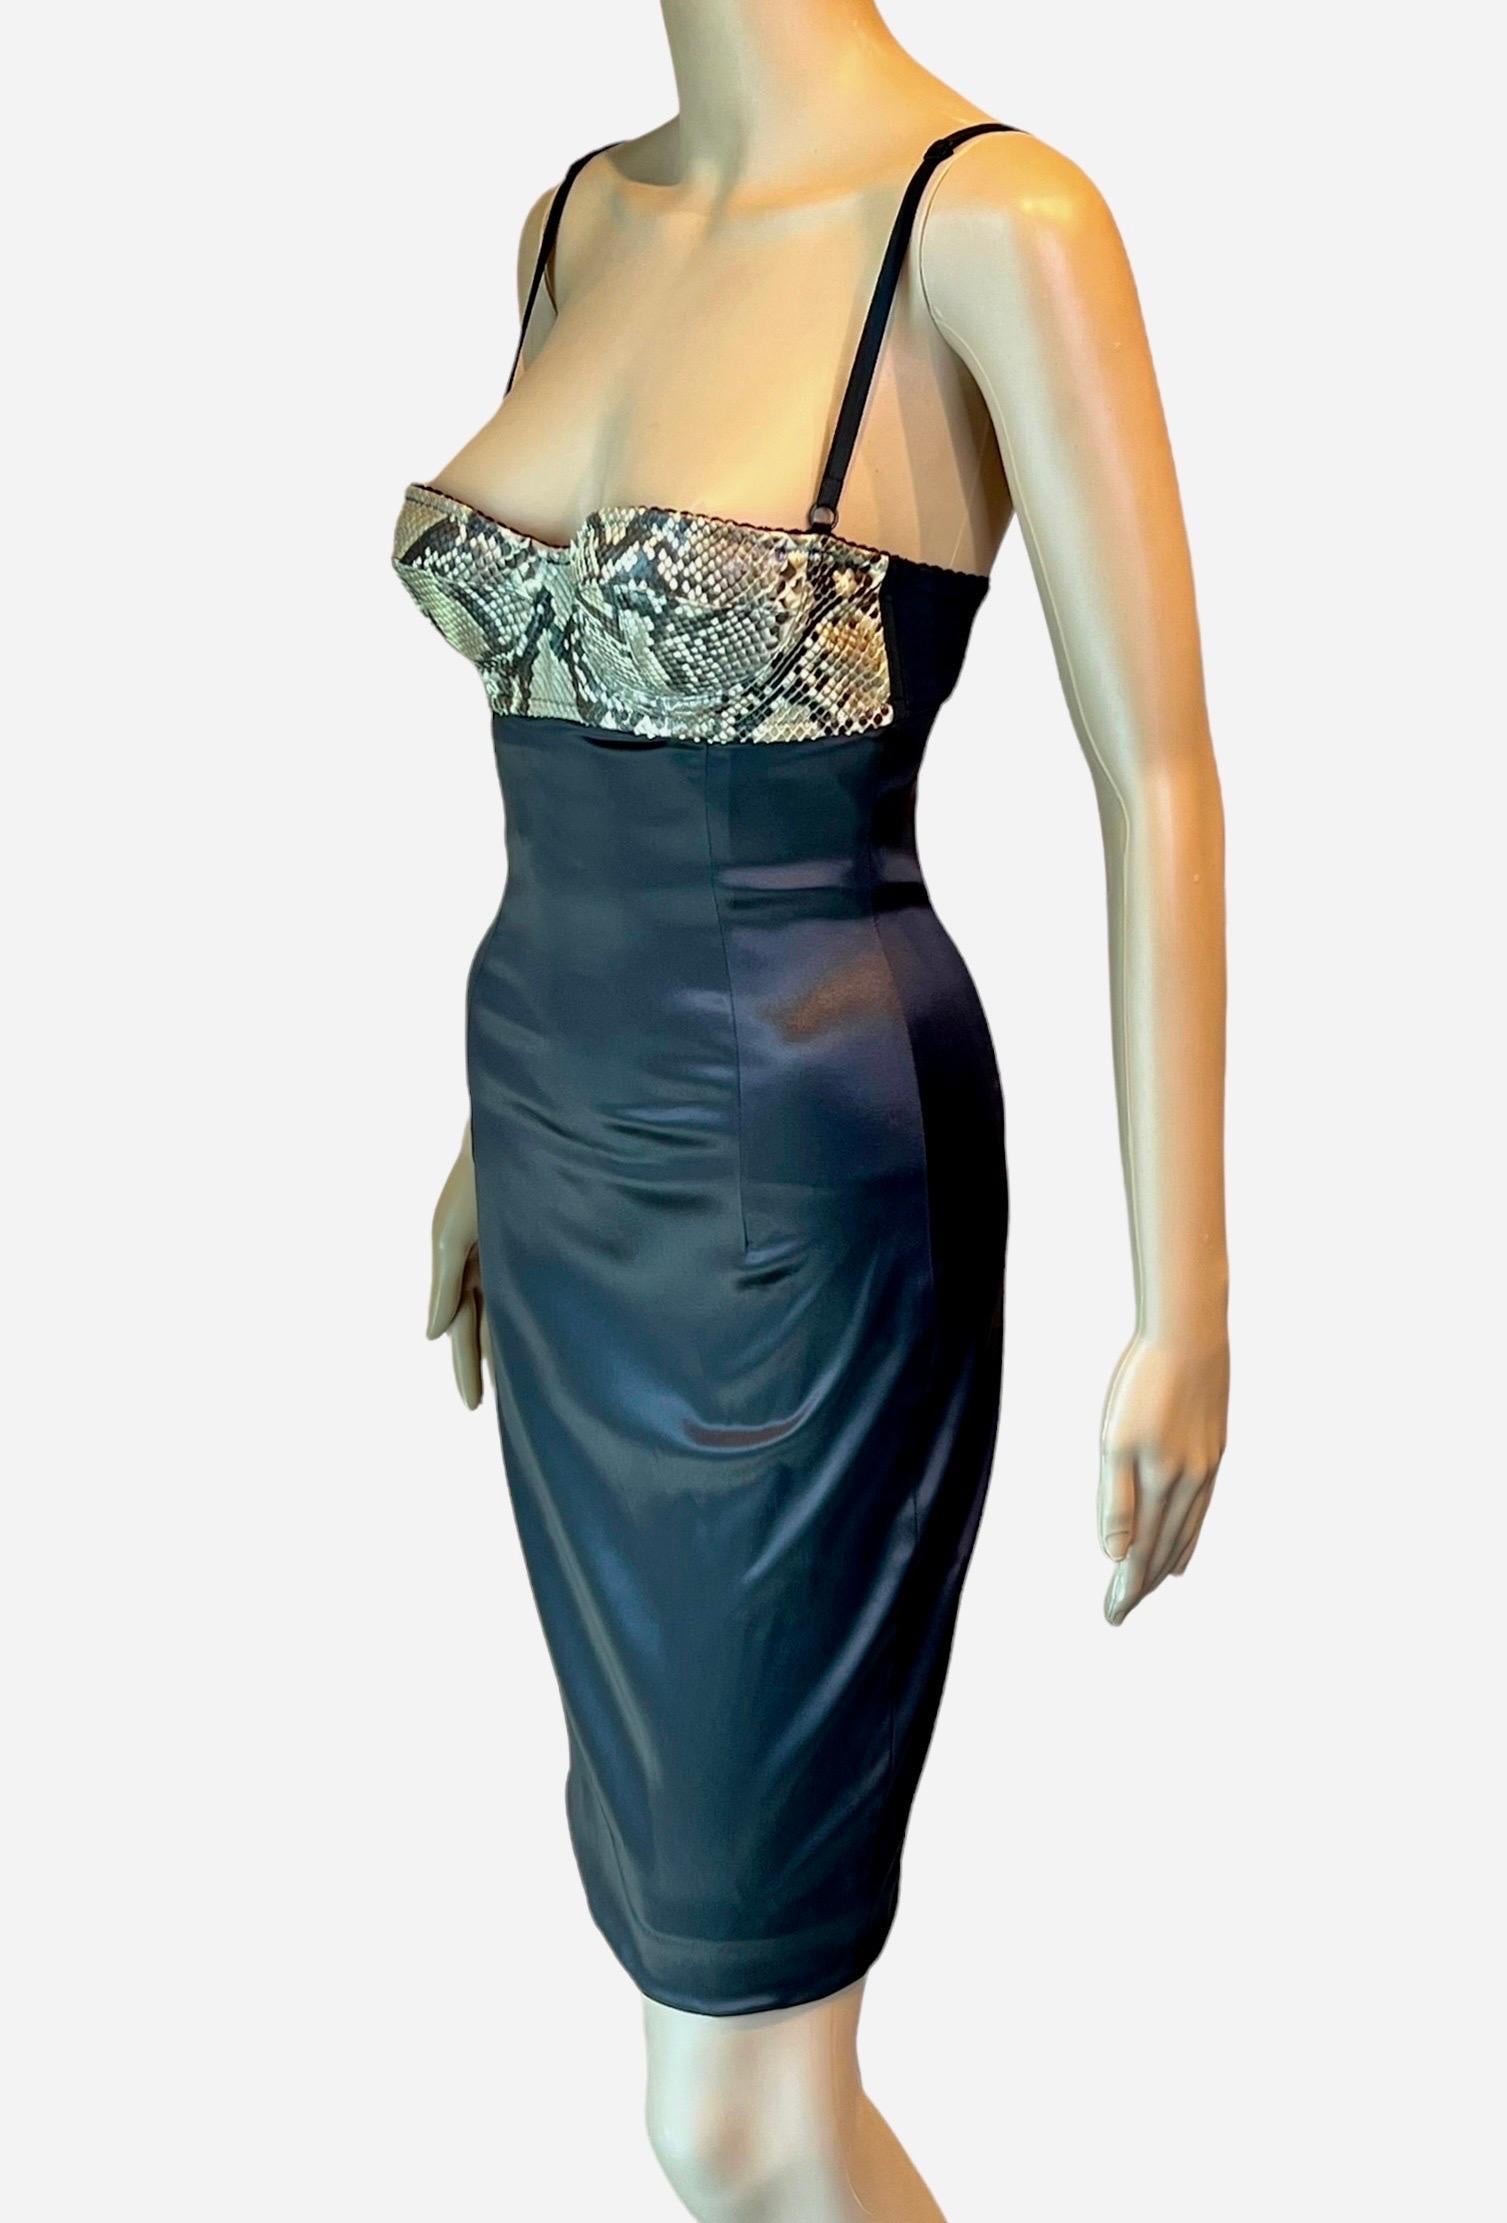 Dolce & Gabbana S/S 2005 Python Leather Bustier Bra Bodycon Silk Mini Dress 3